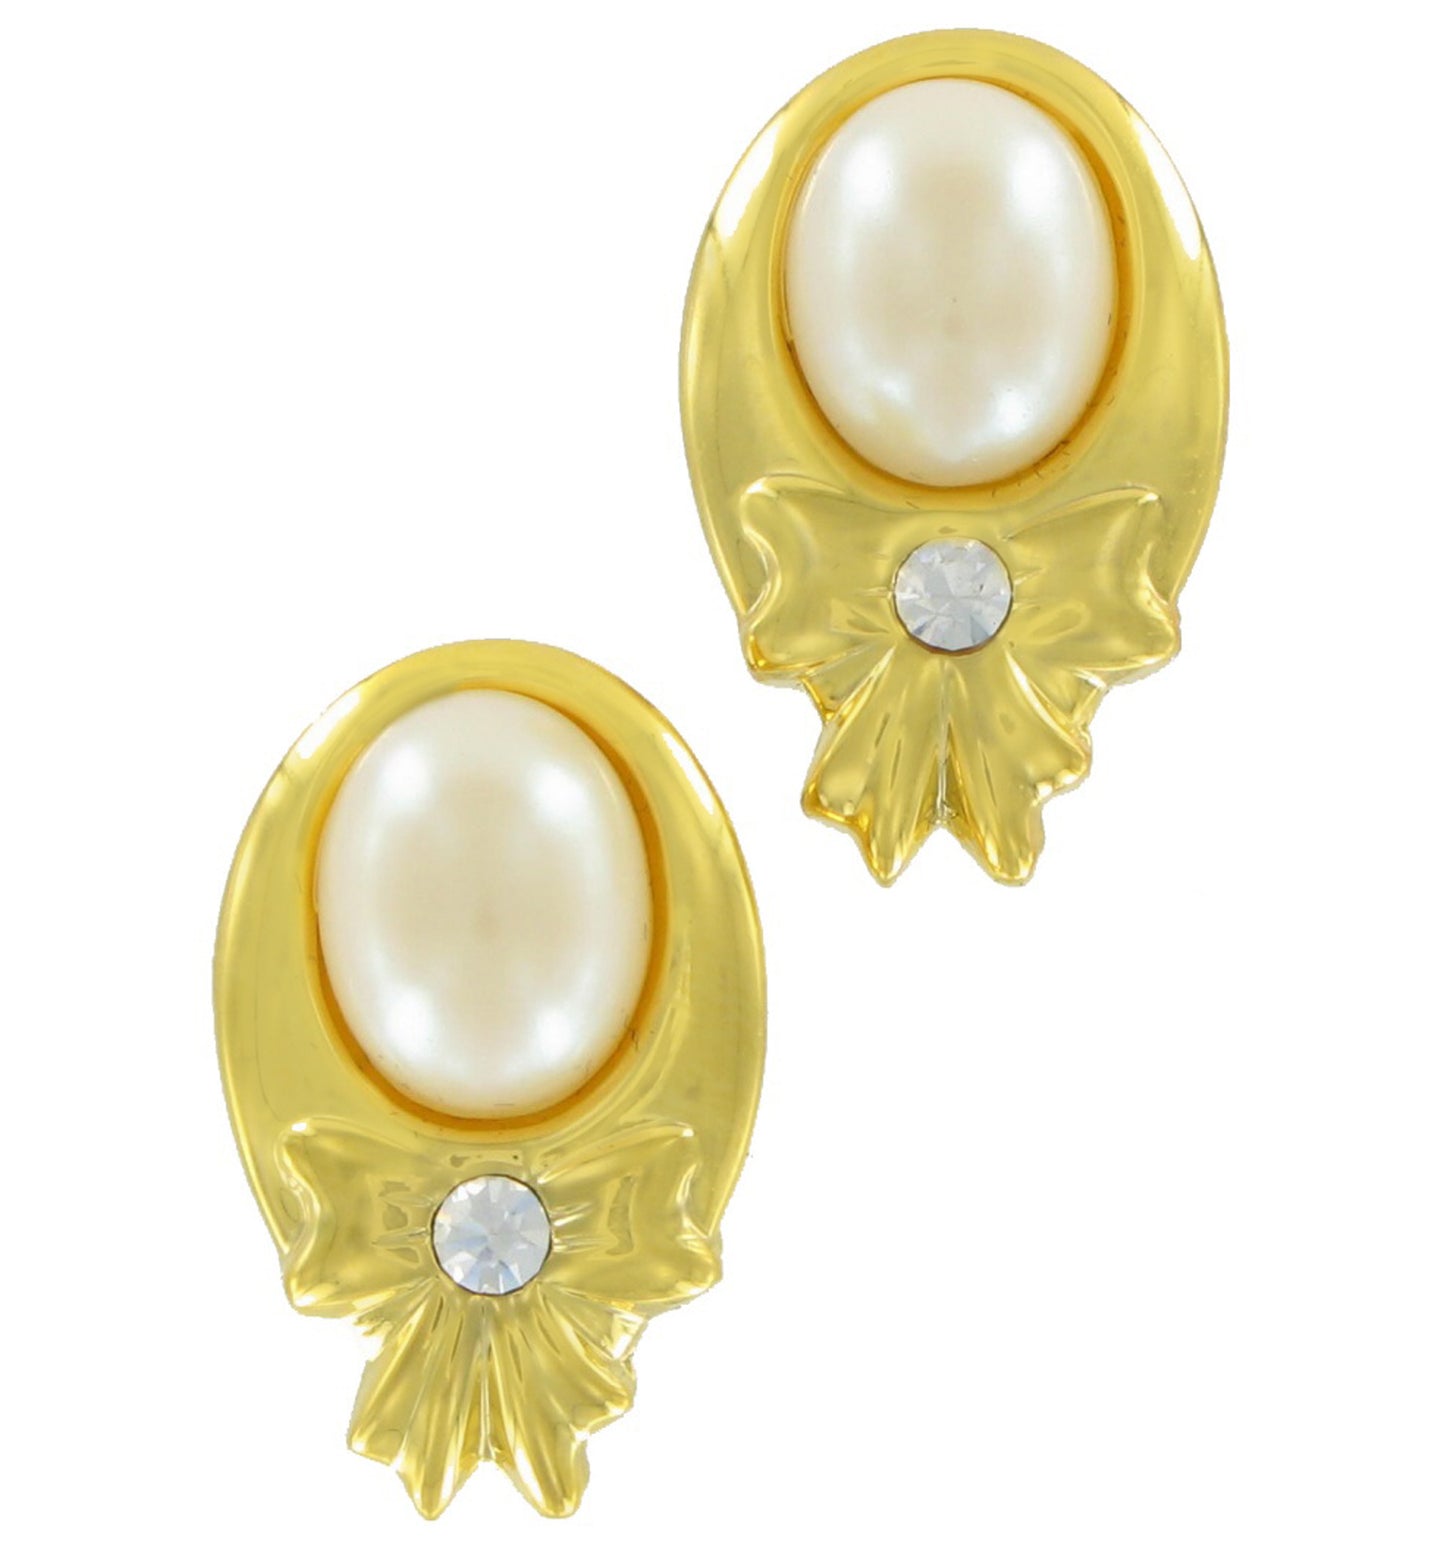 Pierced Earrings Gold Tone Faux Pearl Bow Rhinestone 2 5/8"